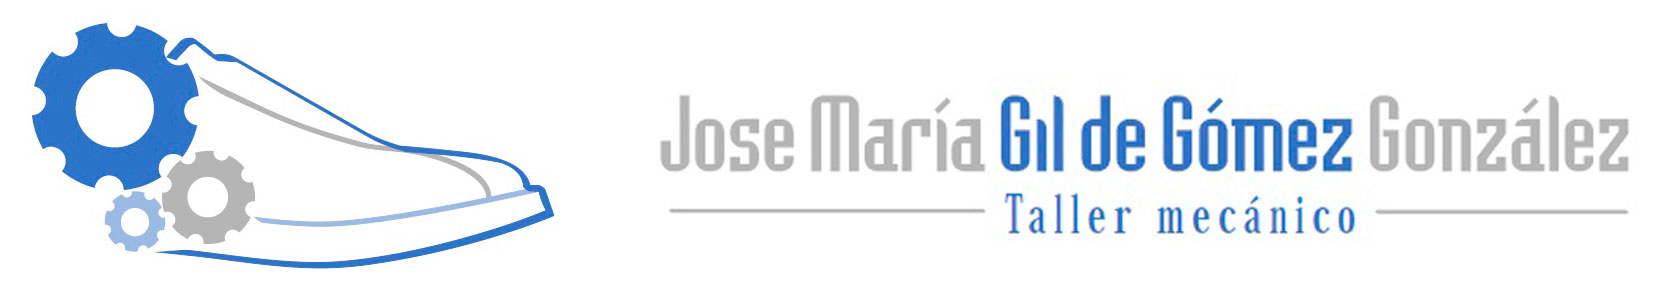 Taller Mecánico Jose María Gil de Gómez González